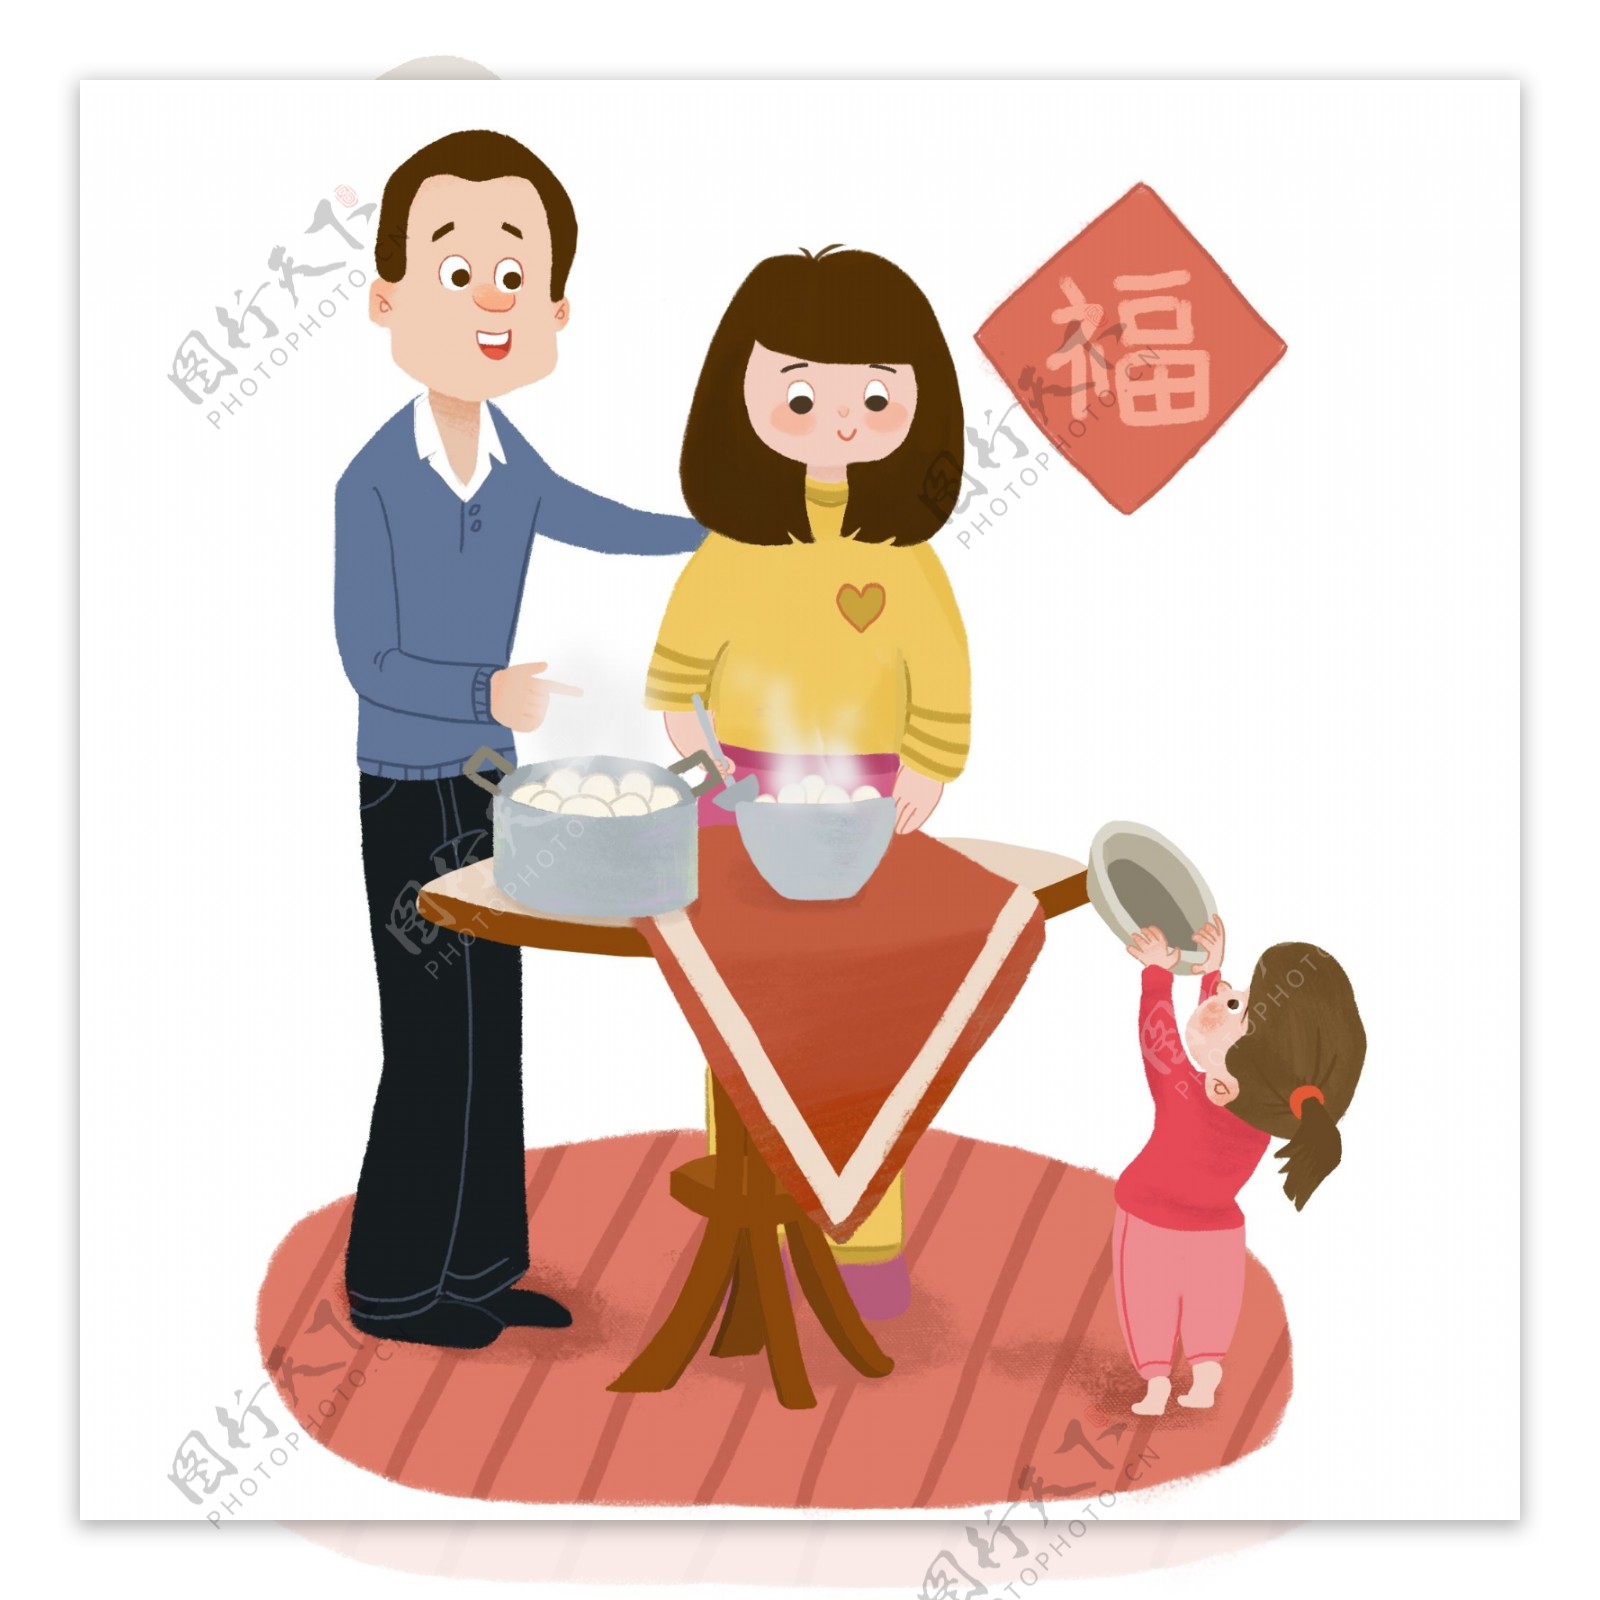 冬至时节一家人幸福的包饺子